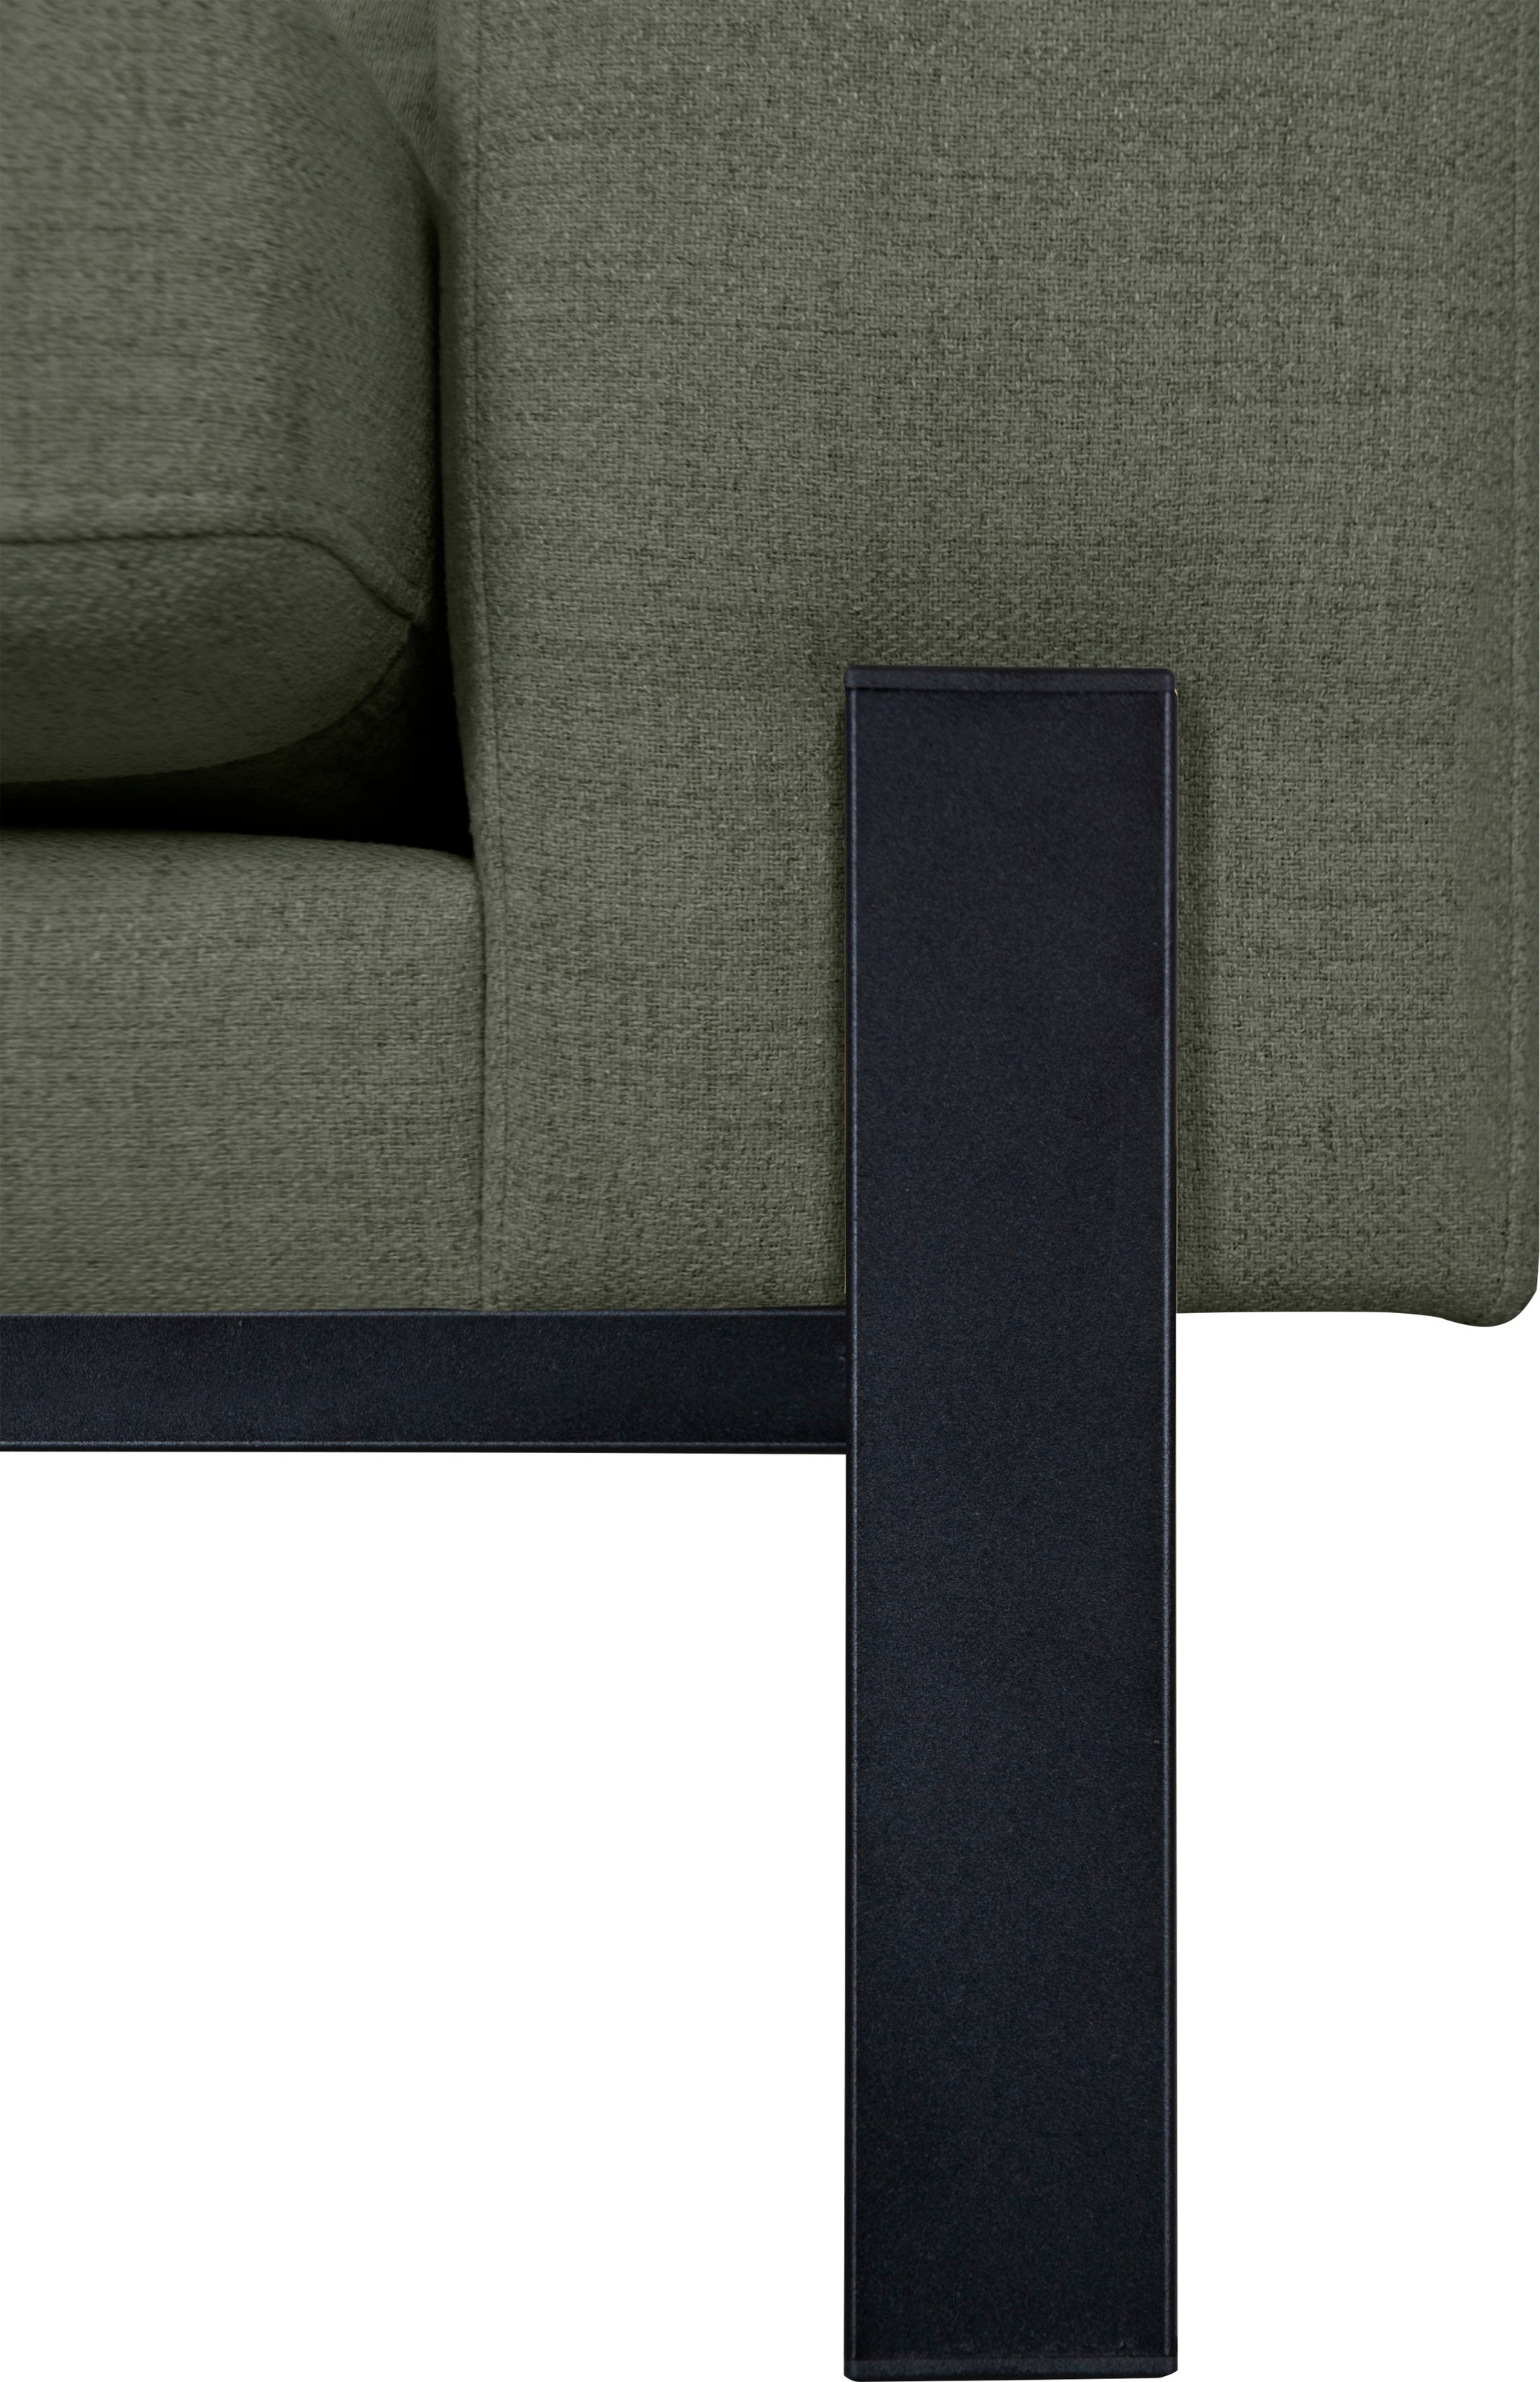 OTTO products 3-Sitzer »Ennis«, Verschiedene Bezugsqualitäten: Baumwolle, recyceltes Polyester